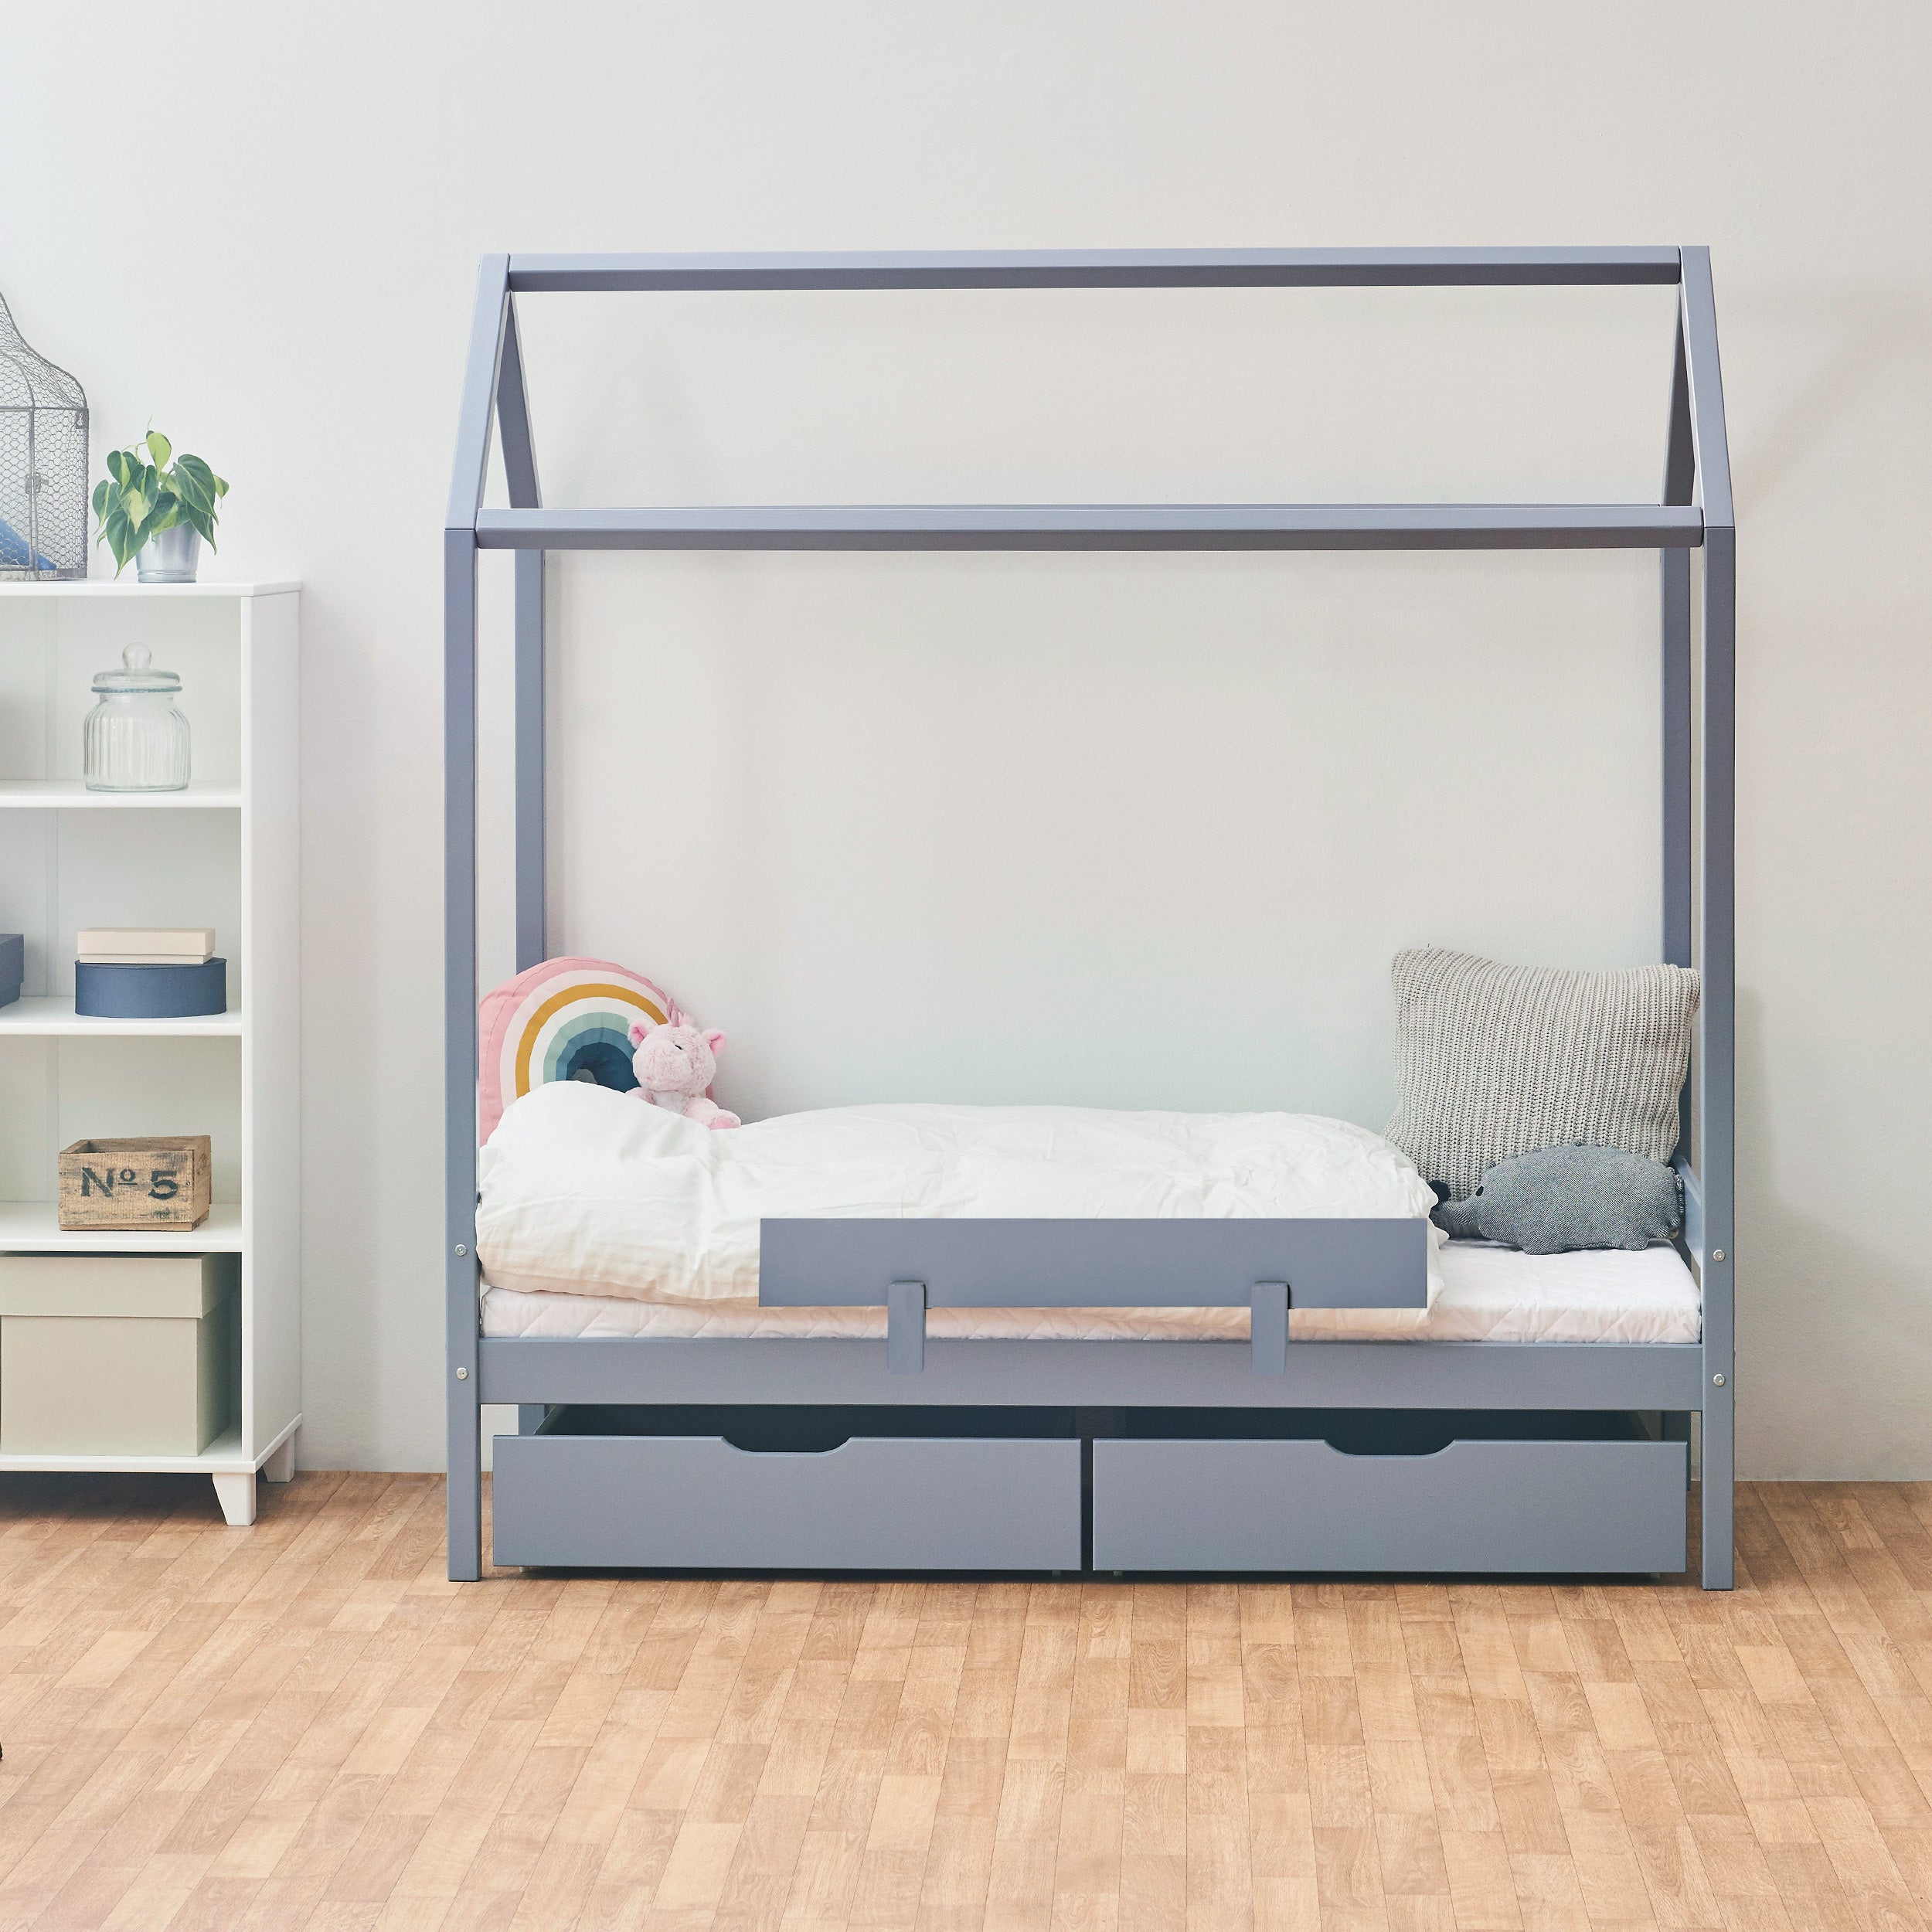 Outlet: ECO Comfort Hausbett mit Bettschubladen & Bettgitter, Blau-Grau